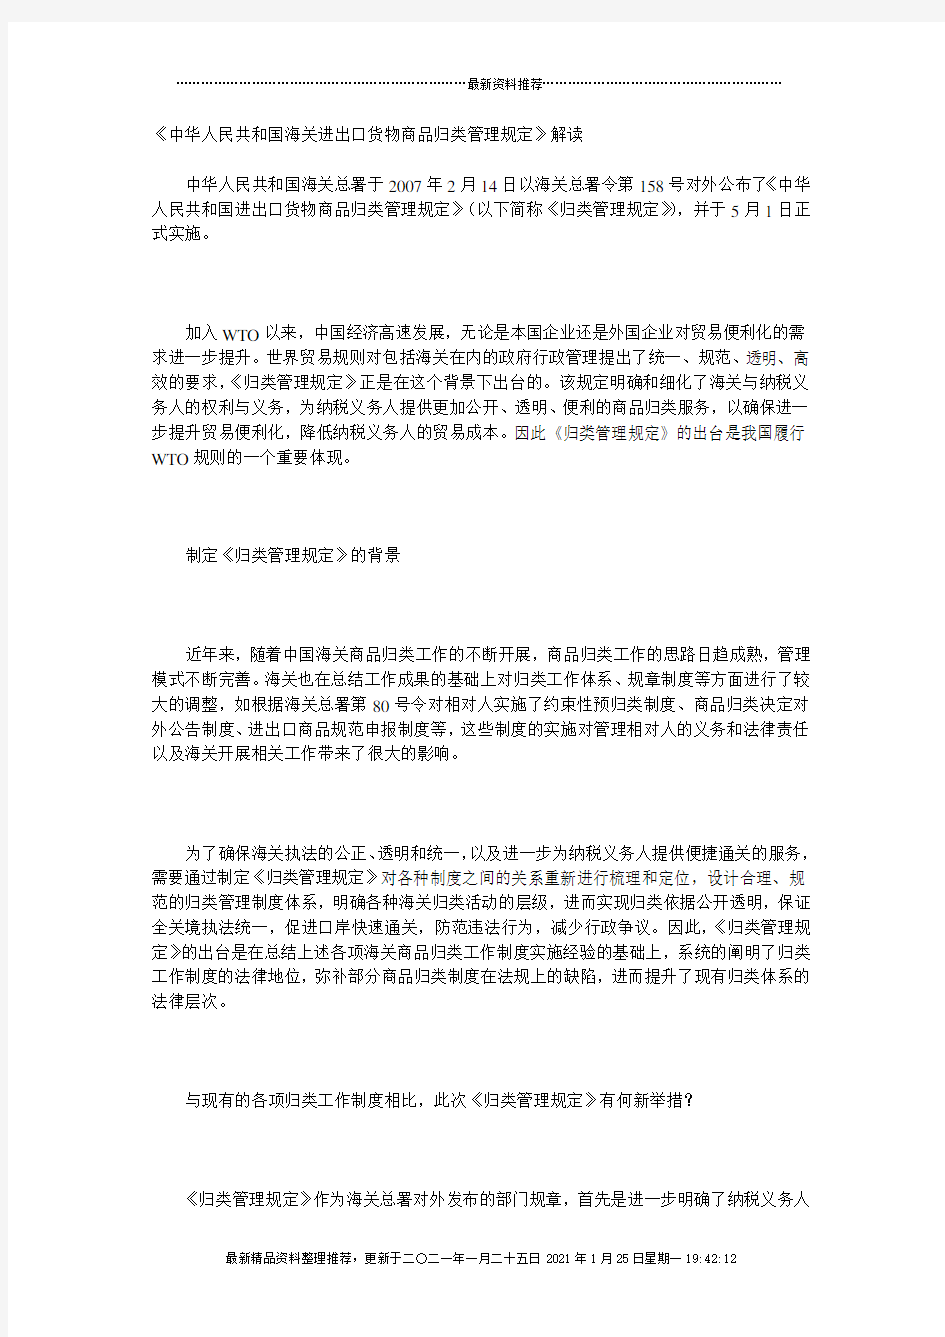 《中华人民共和国海关进出口货物商品归类管理规定》解读